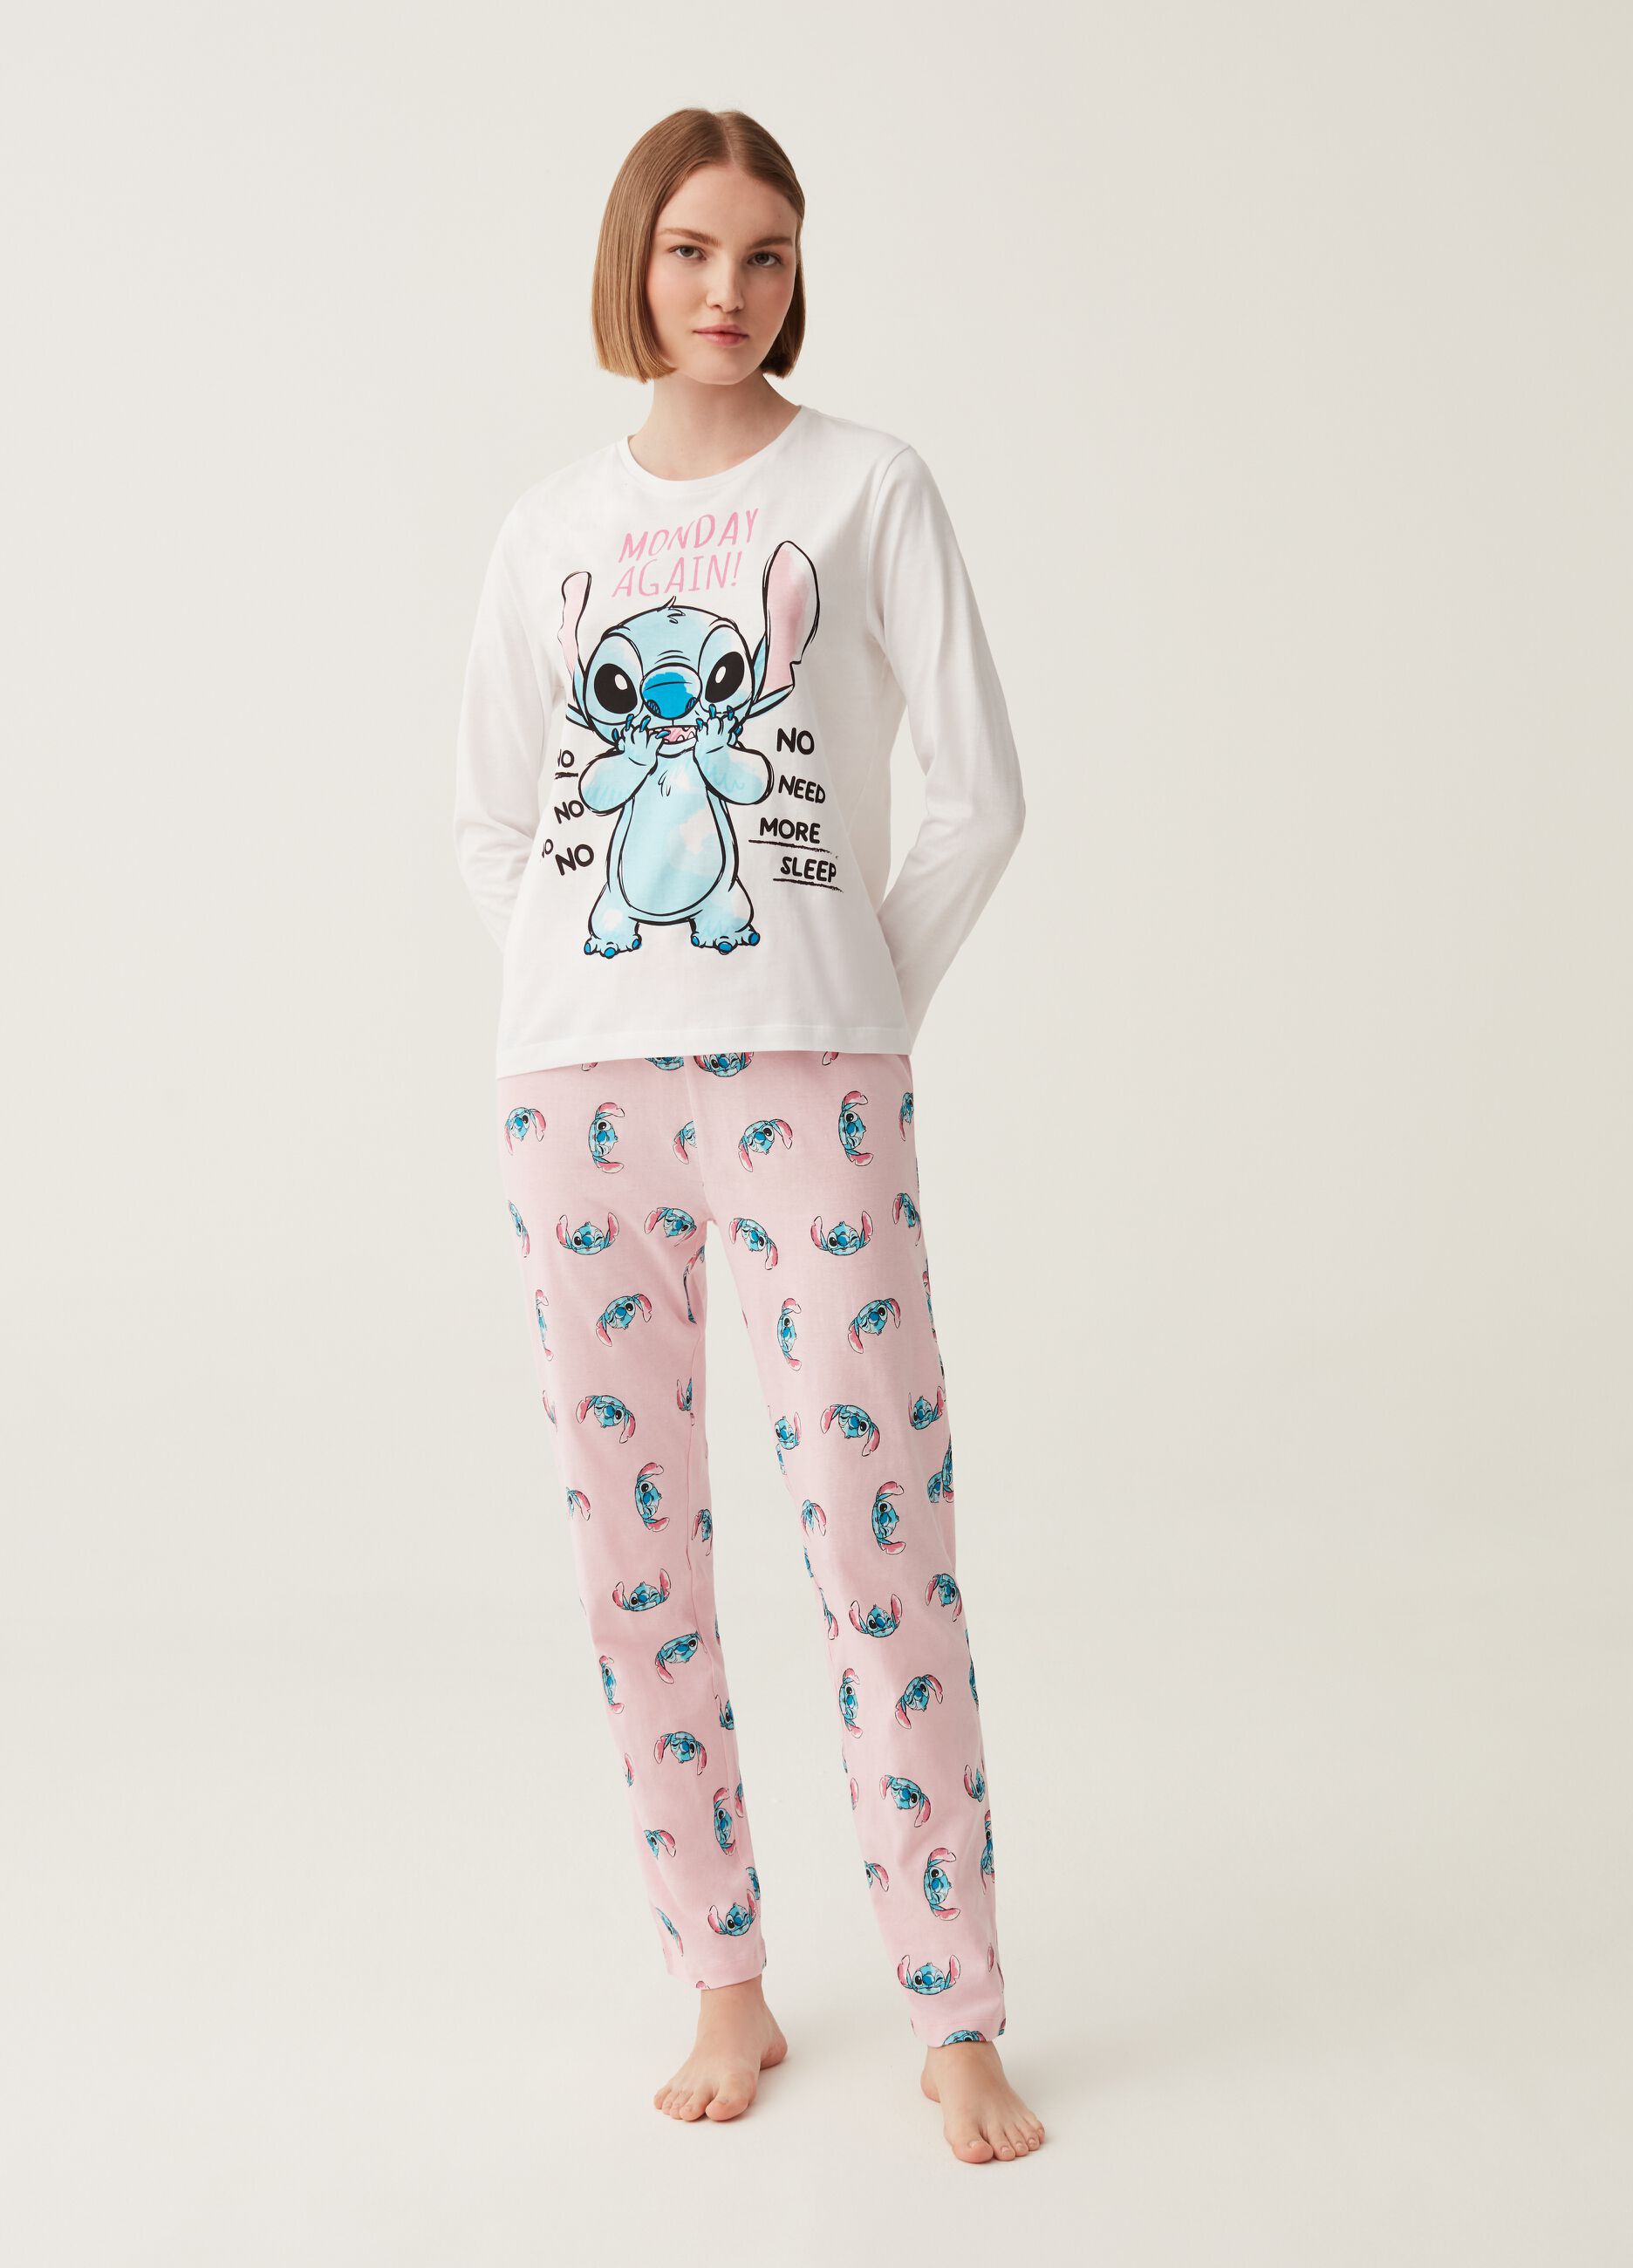 NIGHTWEAR Woman's White/Pink Lilo & Stitch pattern and print pyjamas